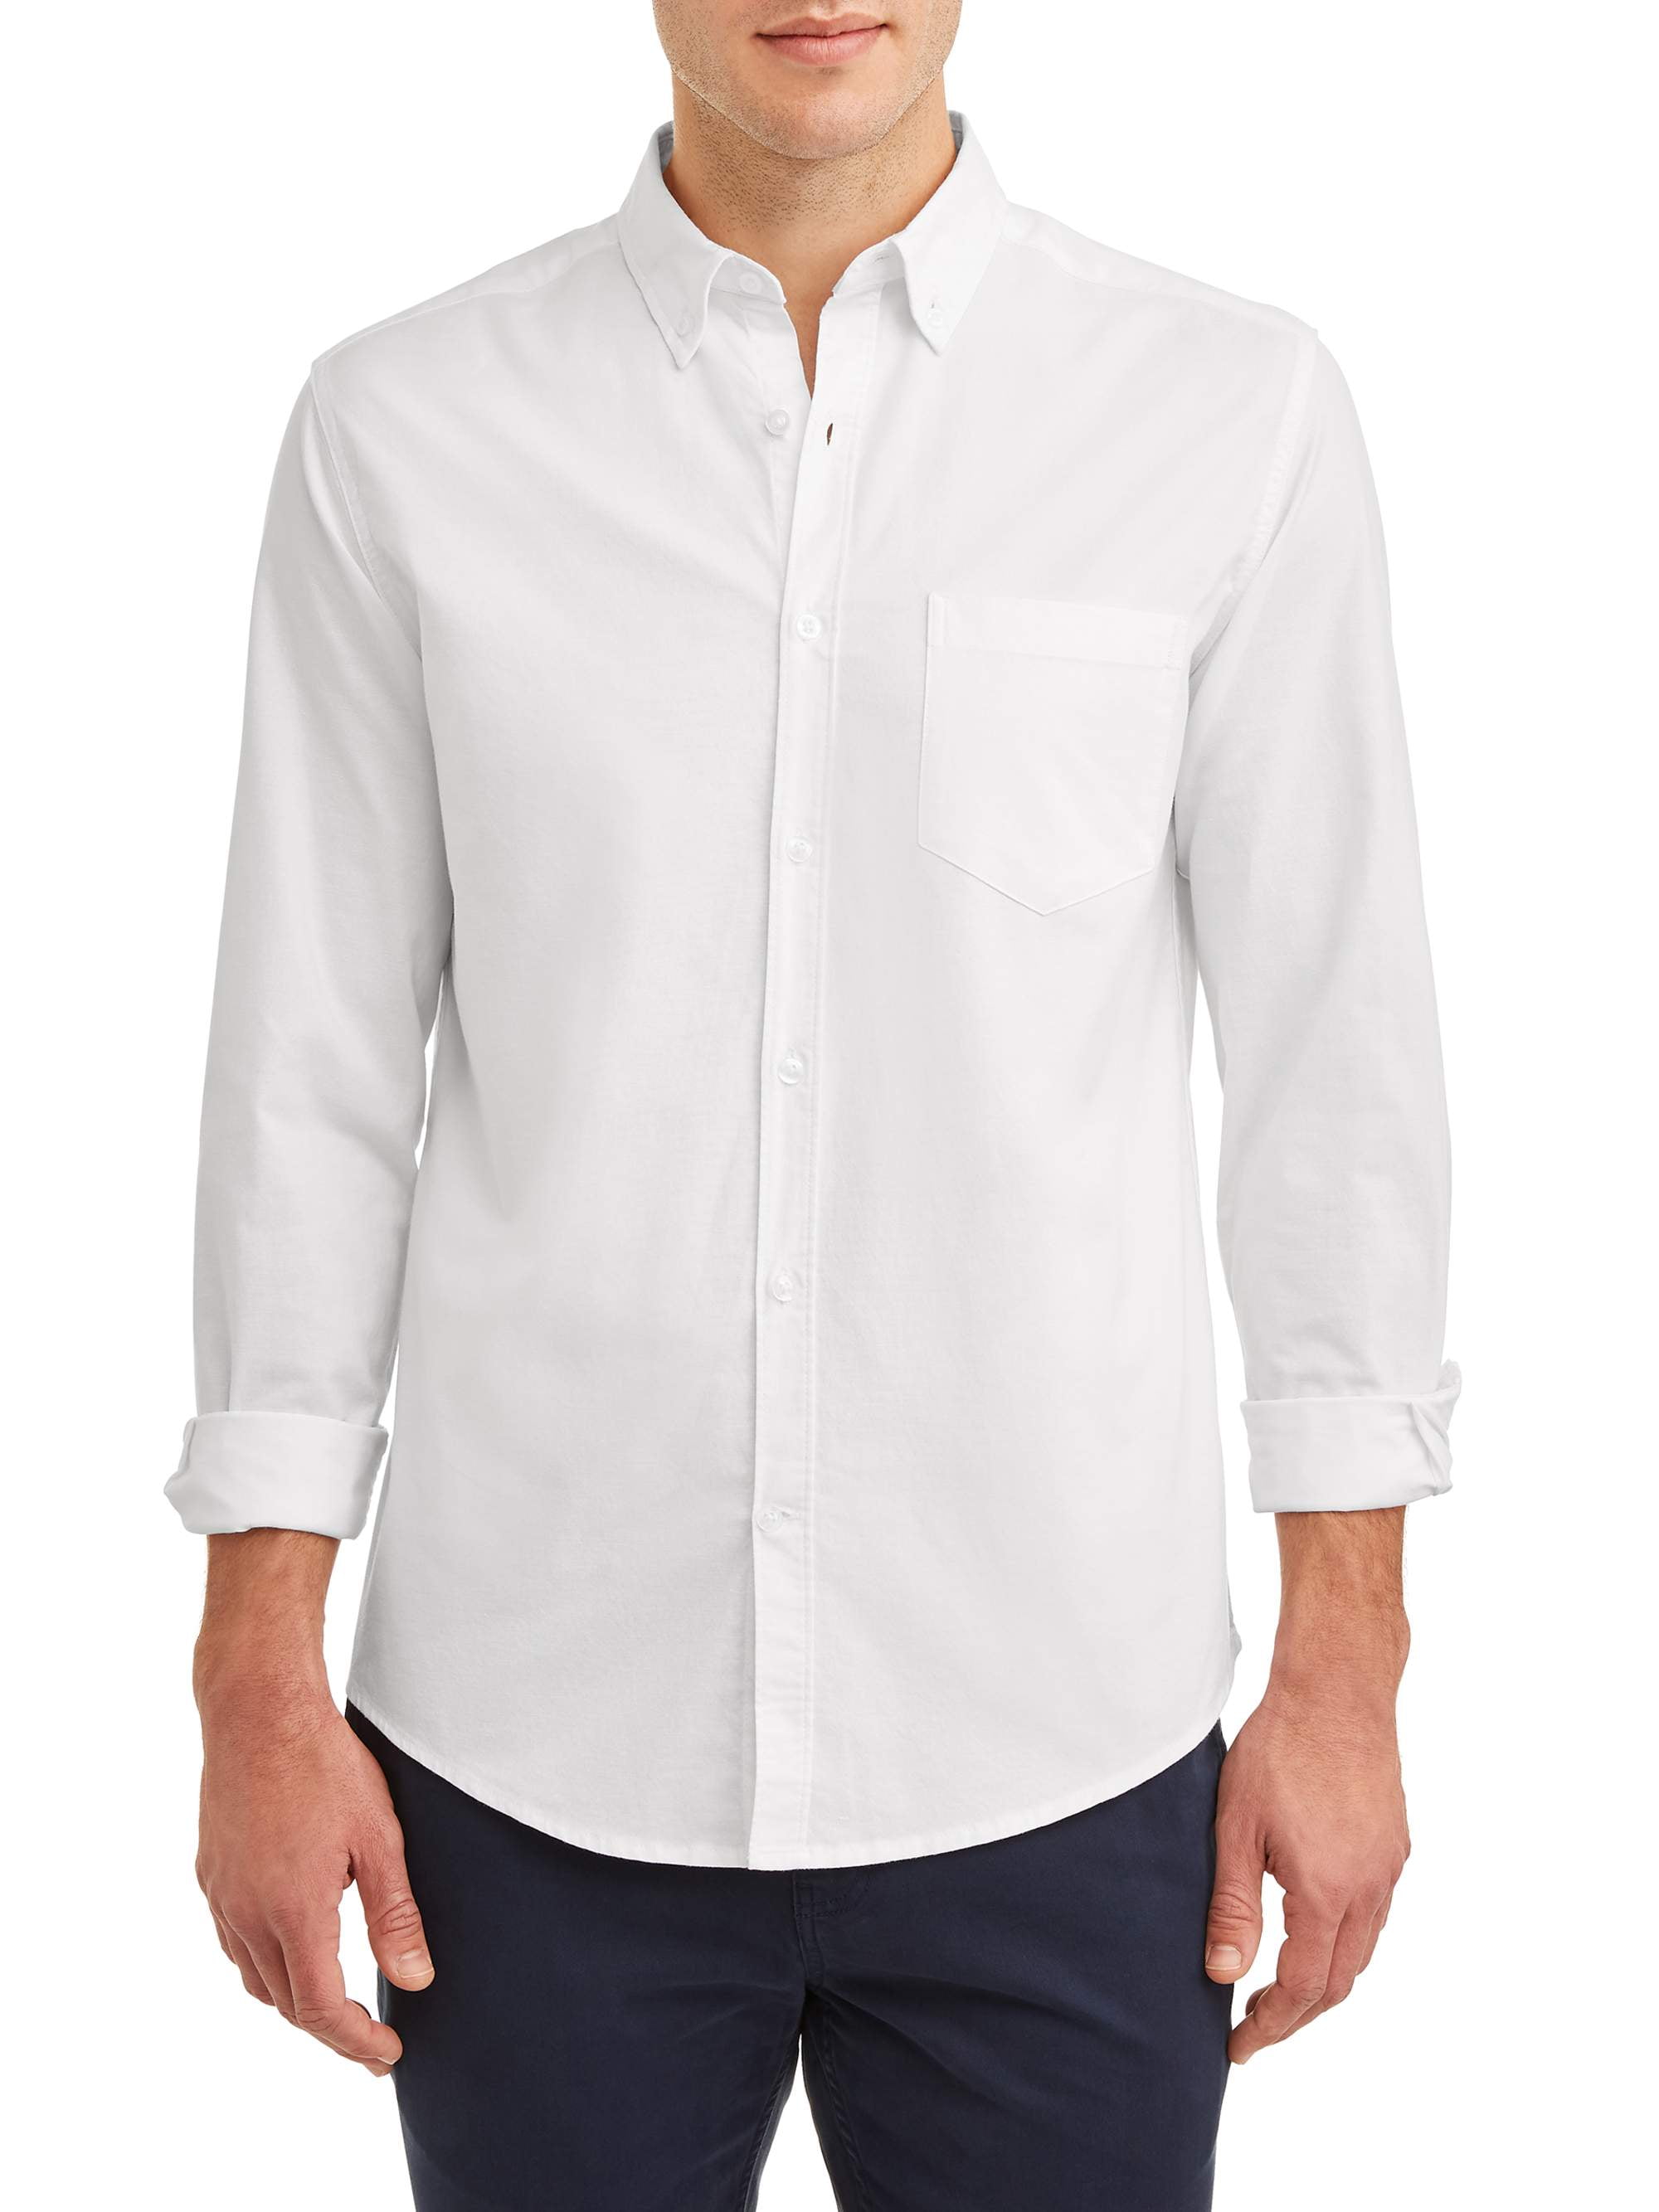 George Slim Fit Oxford Shirt - Walmart.com